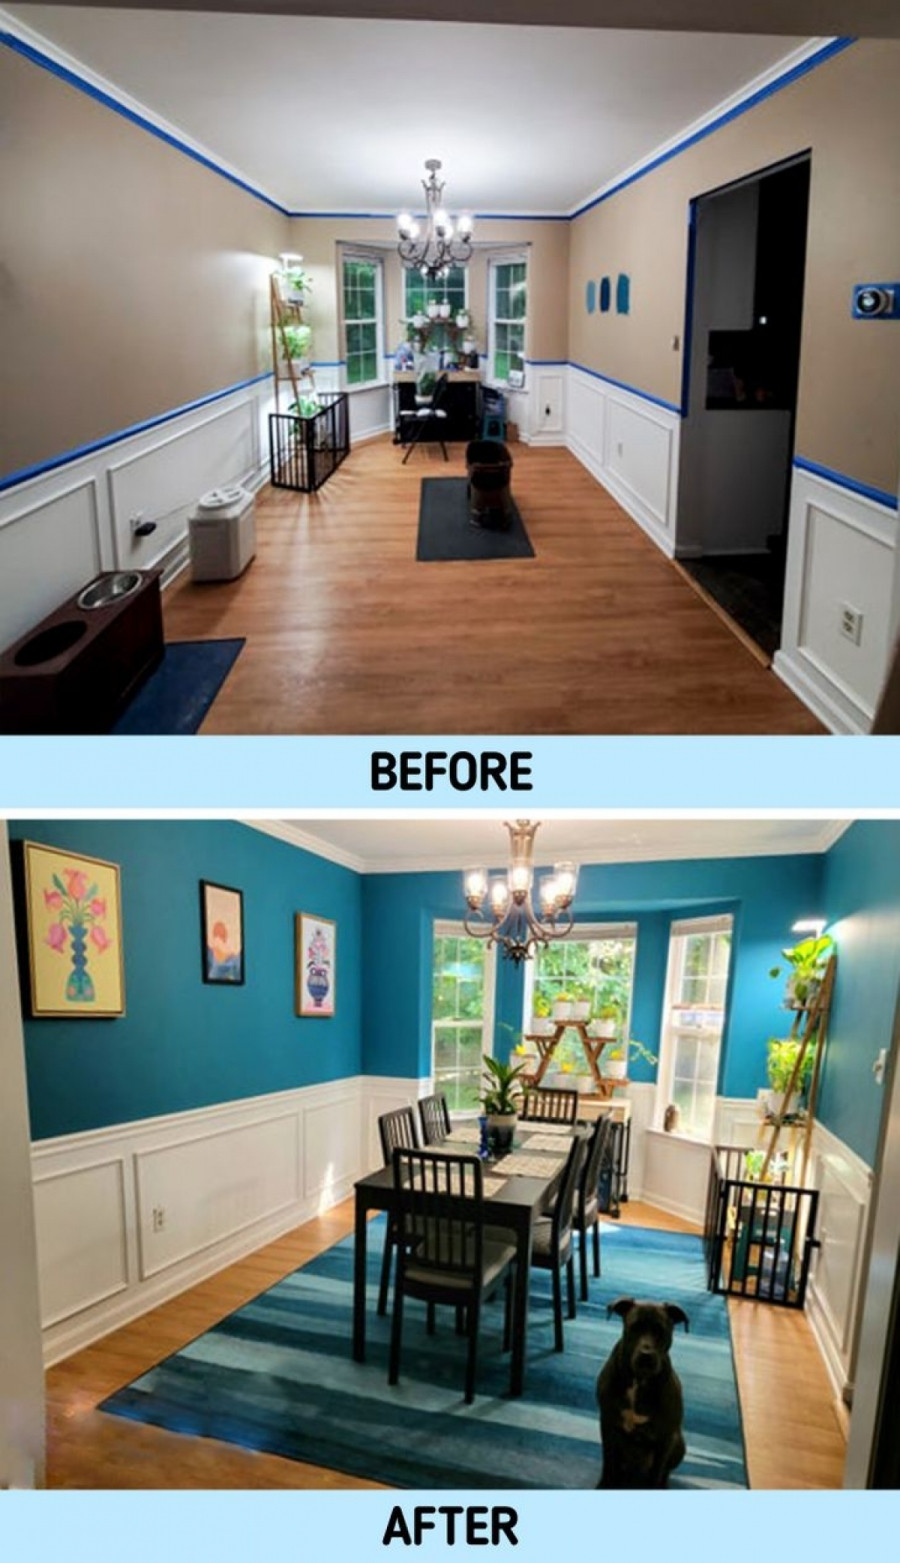 Phòng ăn mới lạ và hiện đại hơn sau quá trình sơn lại màu.